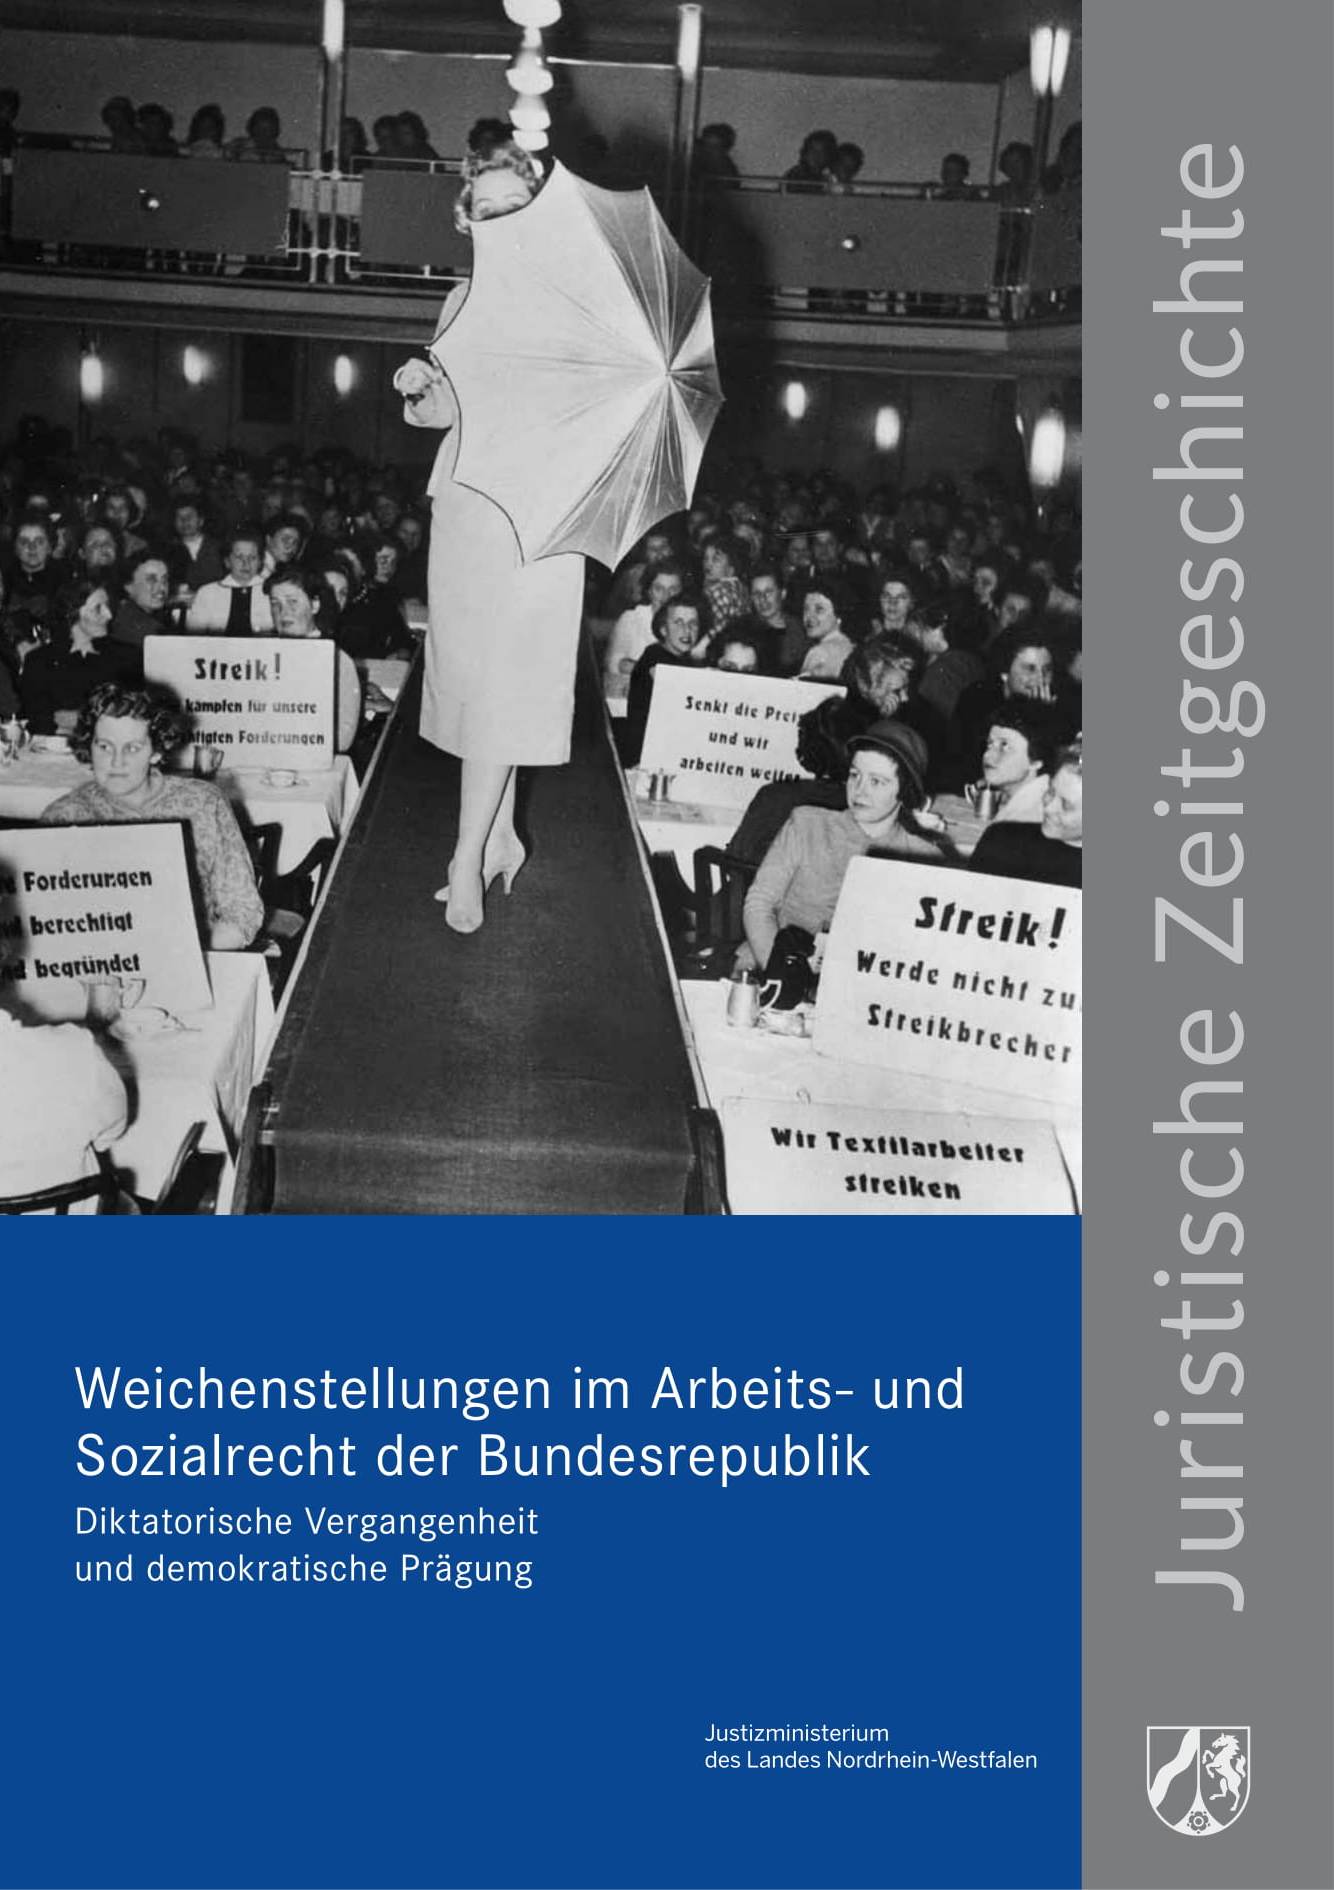 Foto einer Filmpräsentation im Rahmen der Unfallverhütungswoche 1950 in Wuppertal